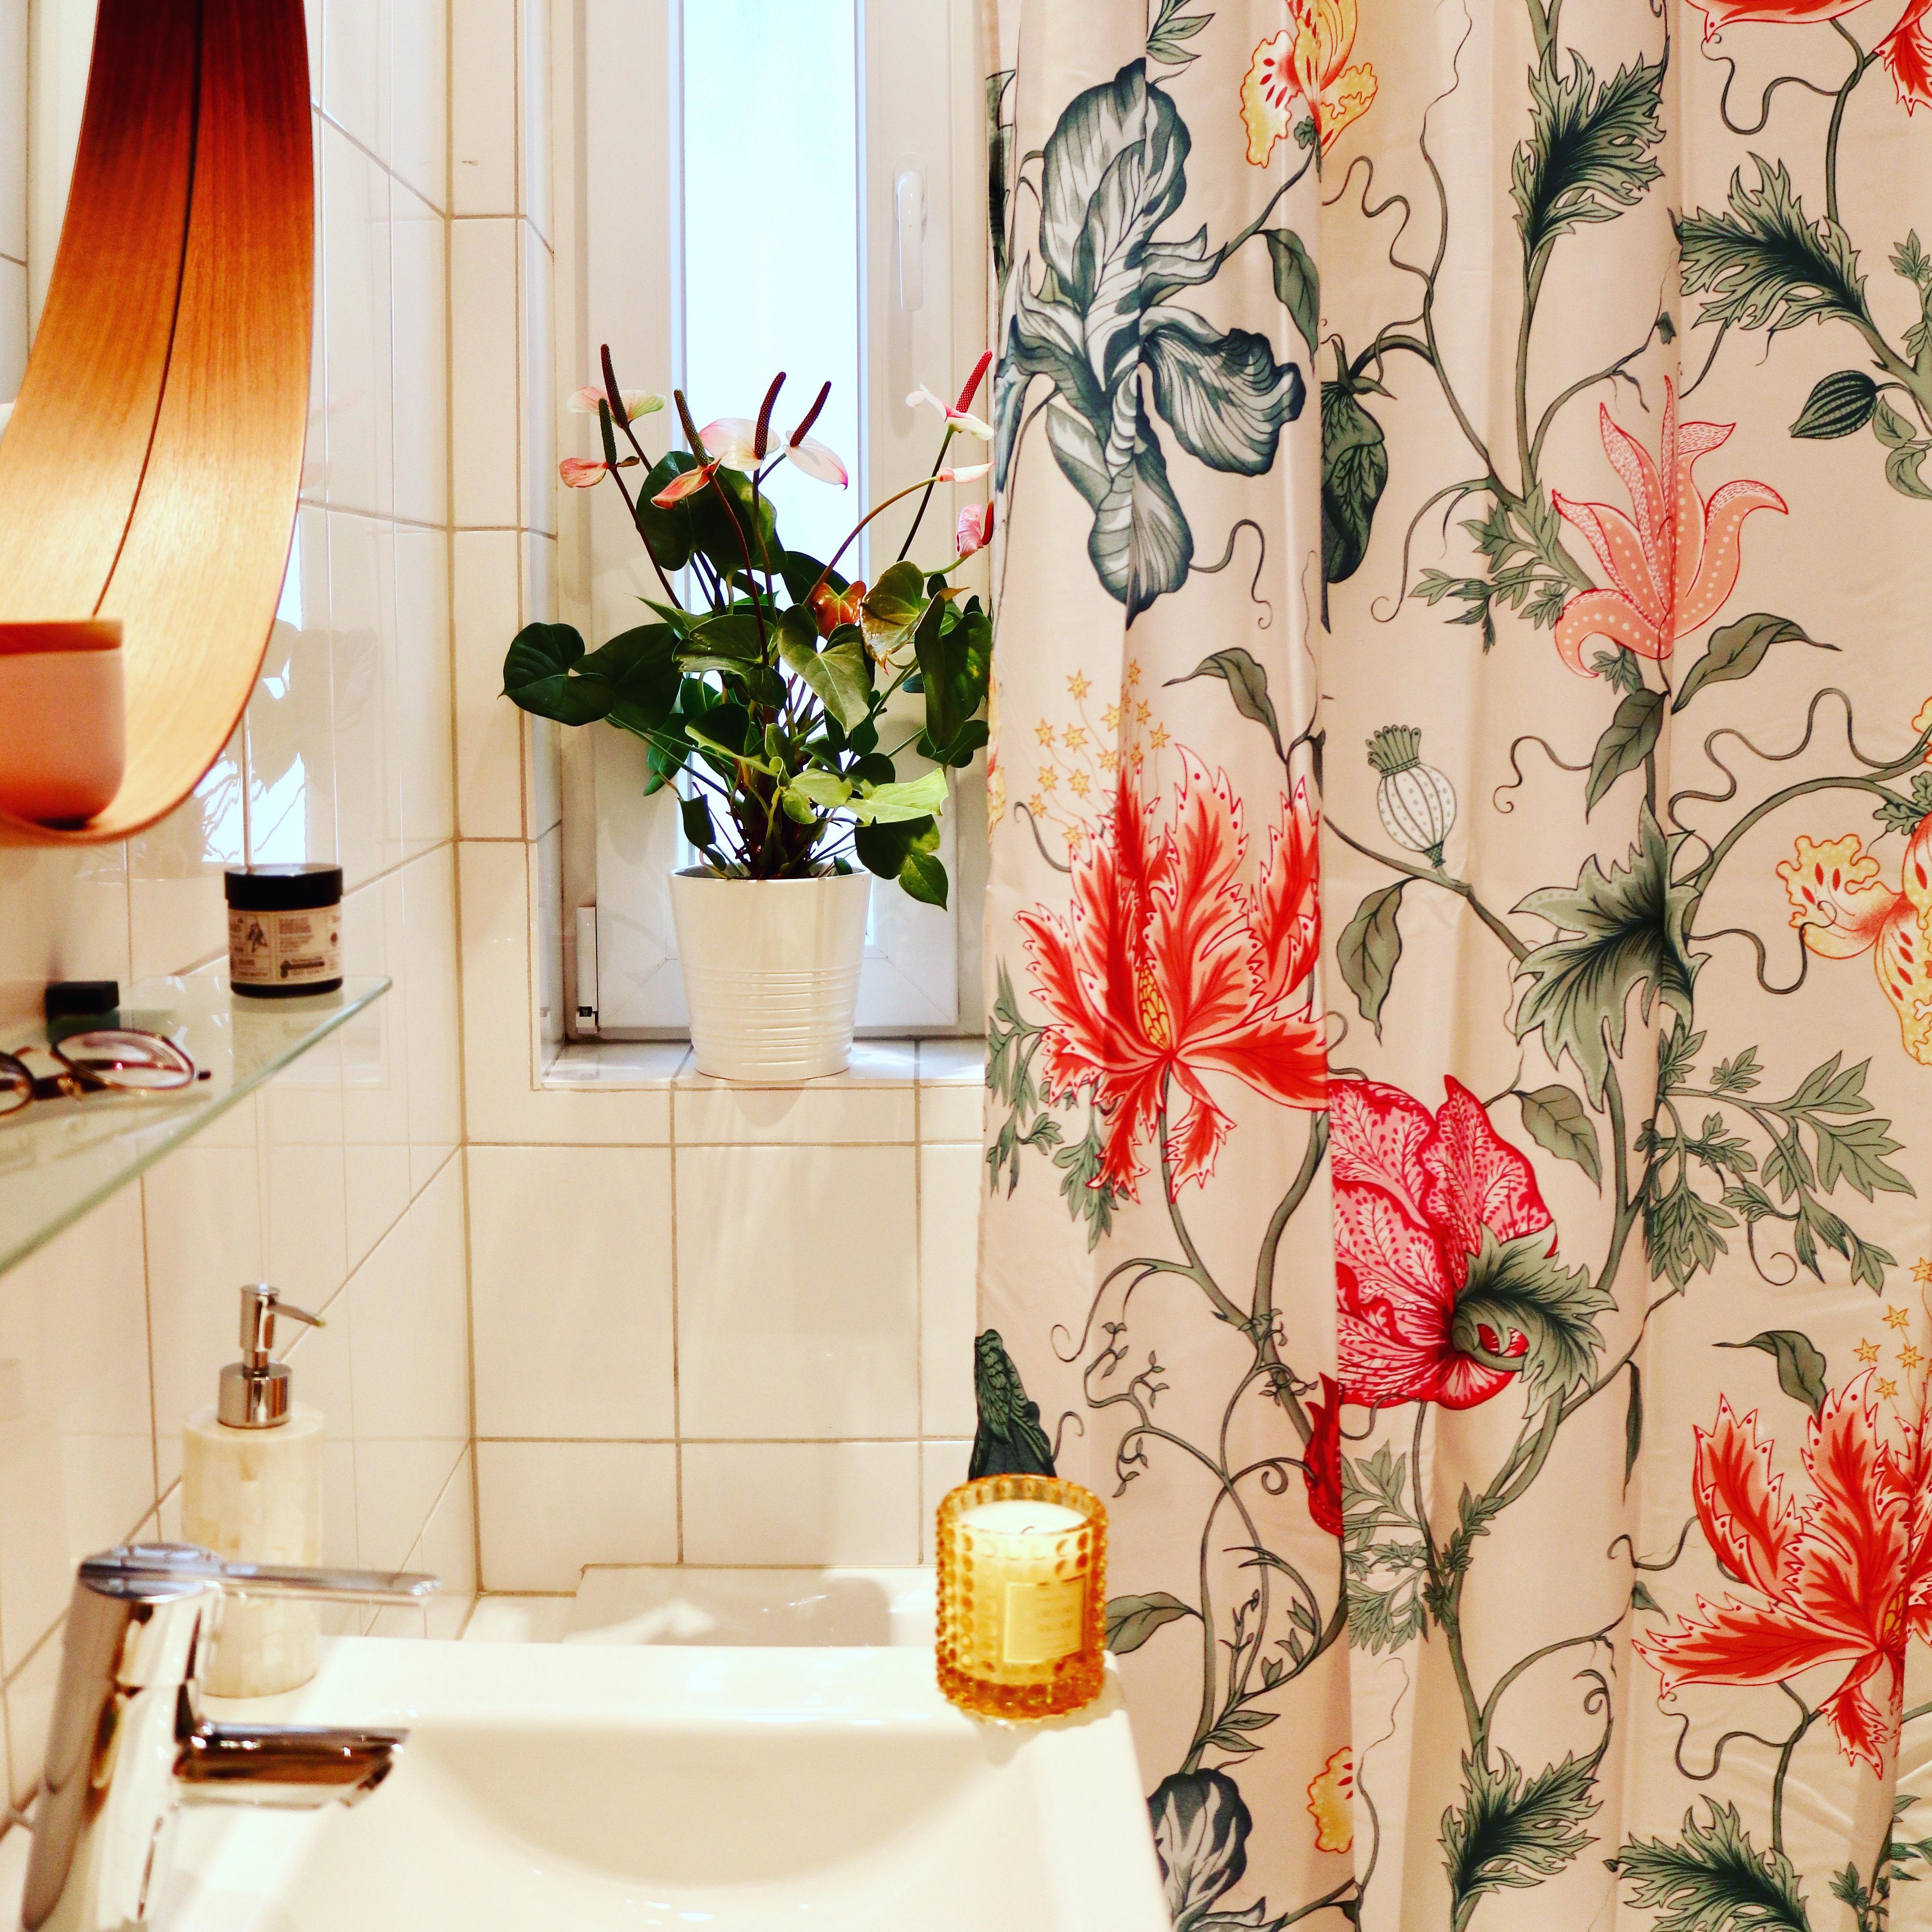 Das #Badezimmer hat jetzt auch seinen Frühlingslook.
#Frühlingsdeko #Blumenliebe #Für mehrfarbeimbad